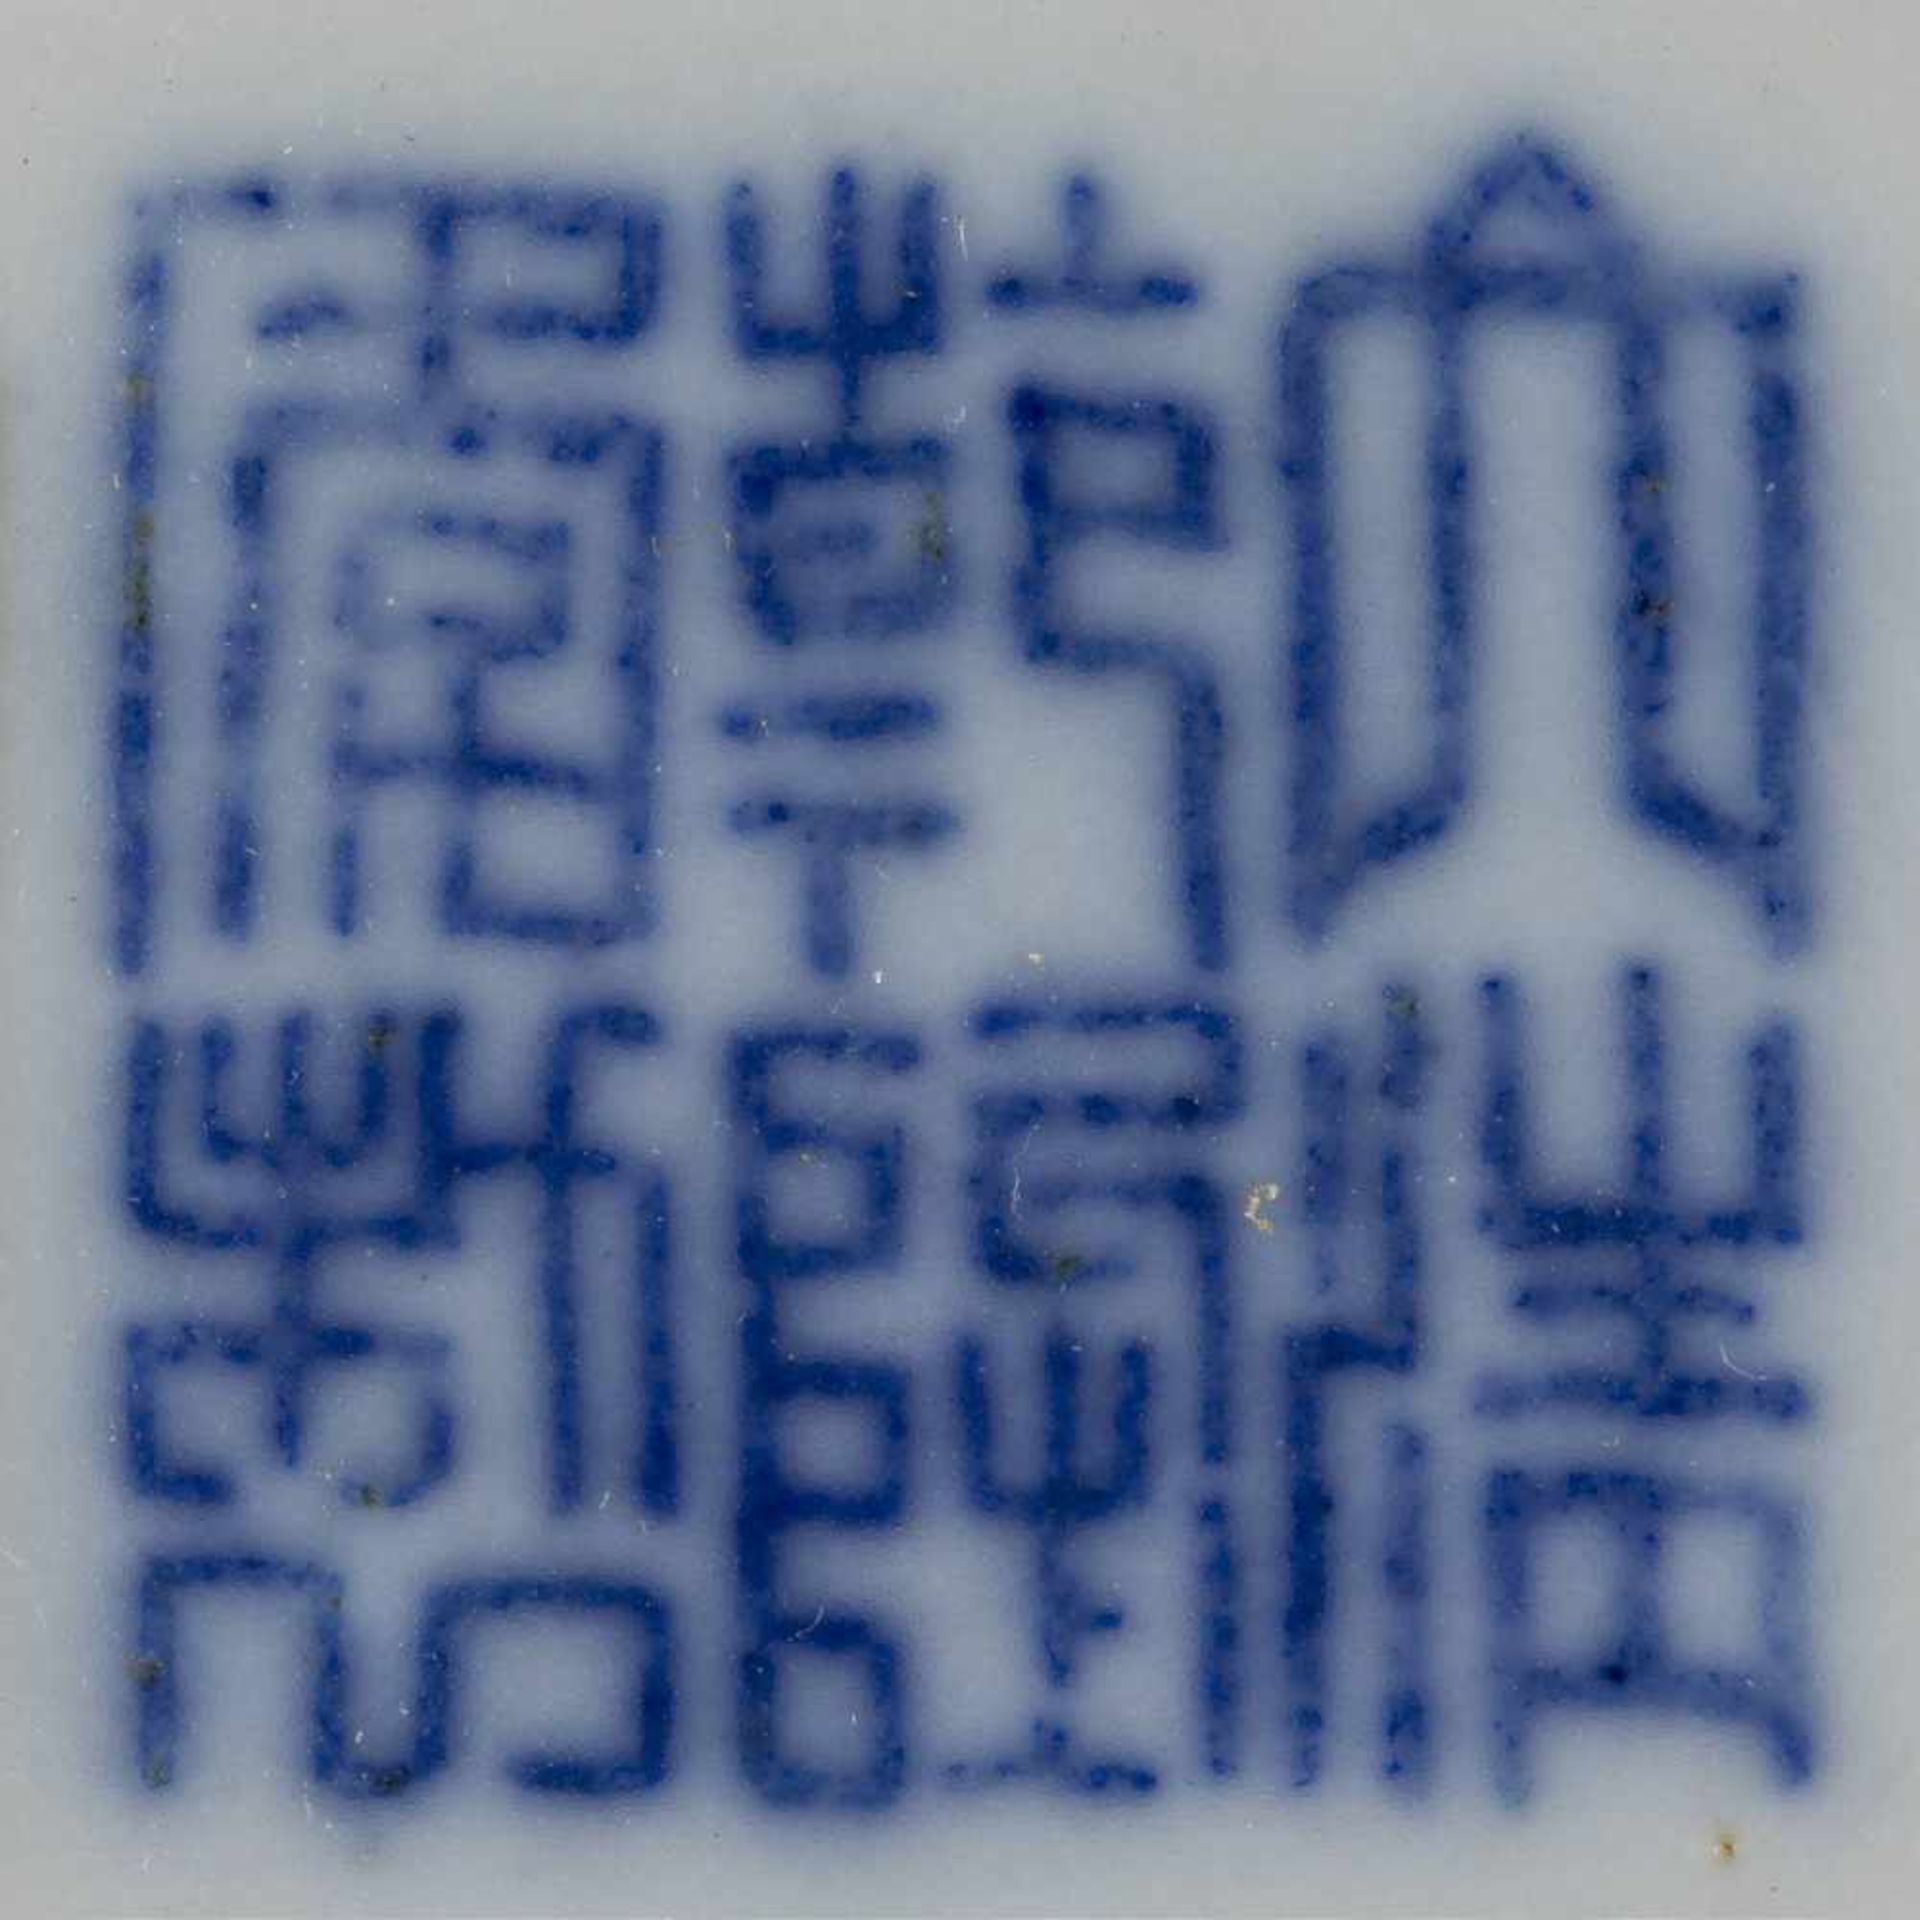 SCHALE MIT PFIRSICHDEKOR IM SPIEGEL China, um 1900 Porzellan, polychrome Bemalung. D. 21,9 cm. Im - Bild 2 aus 2